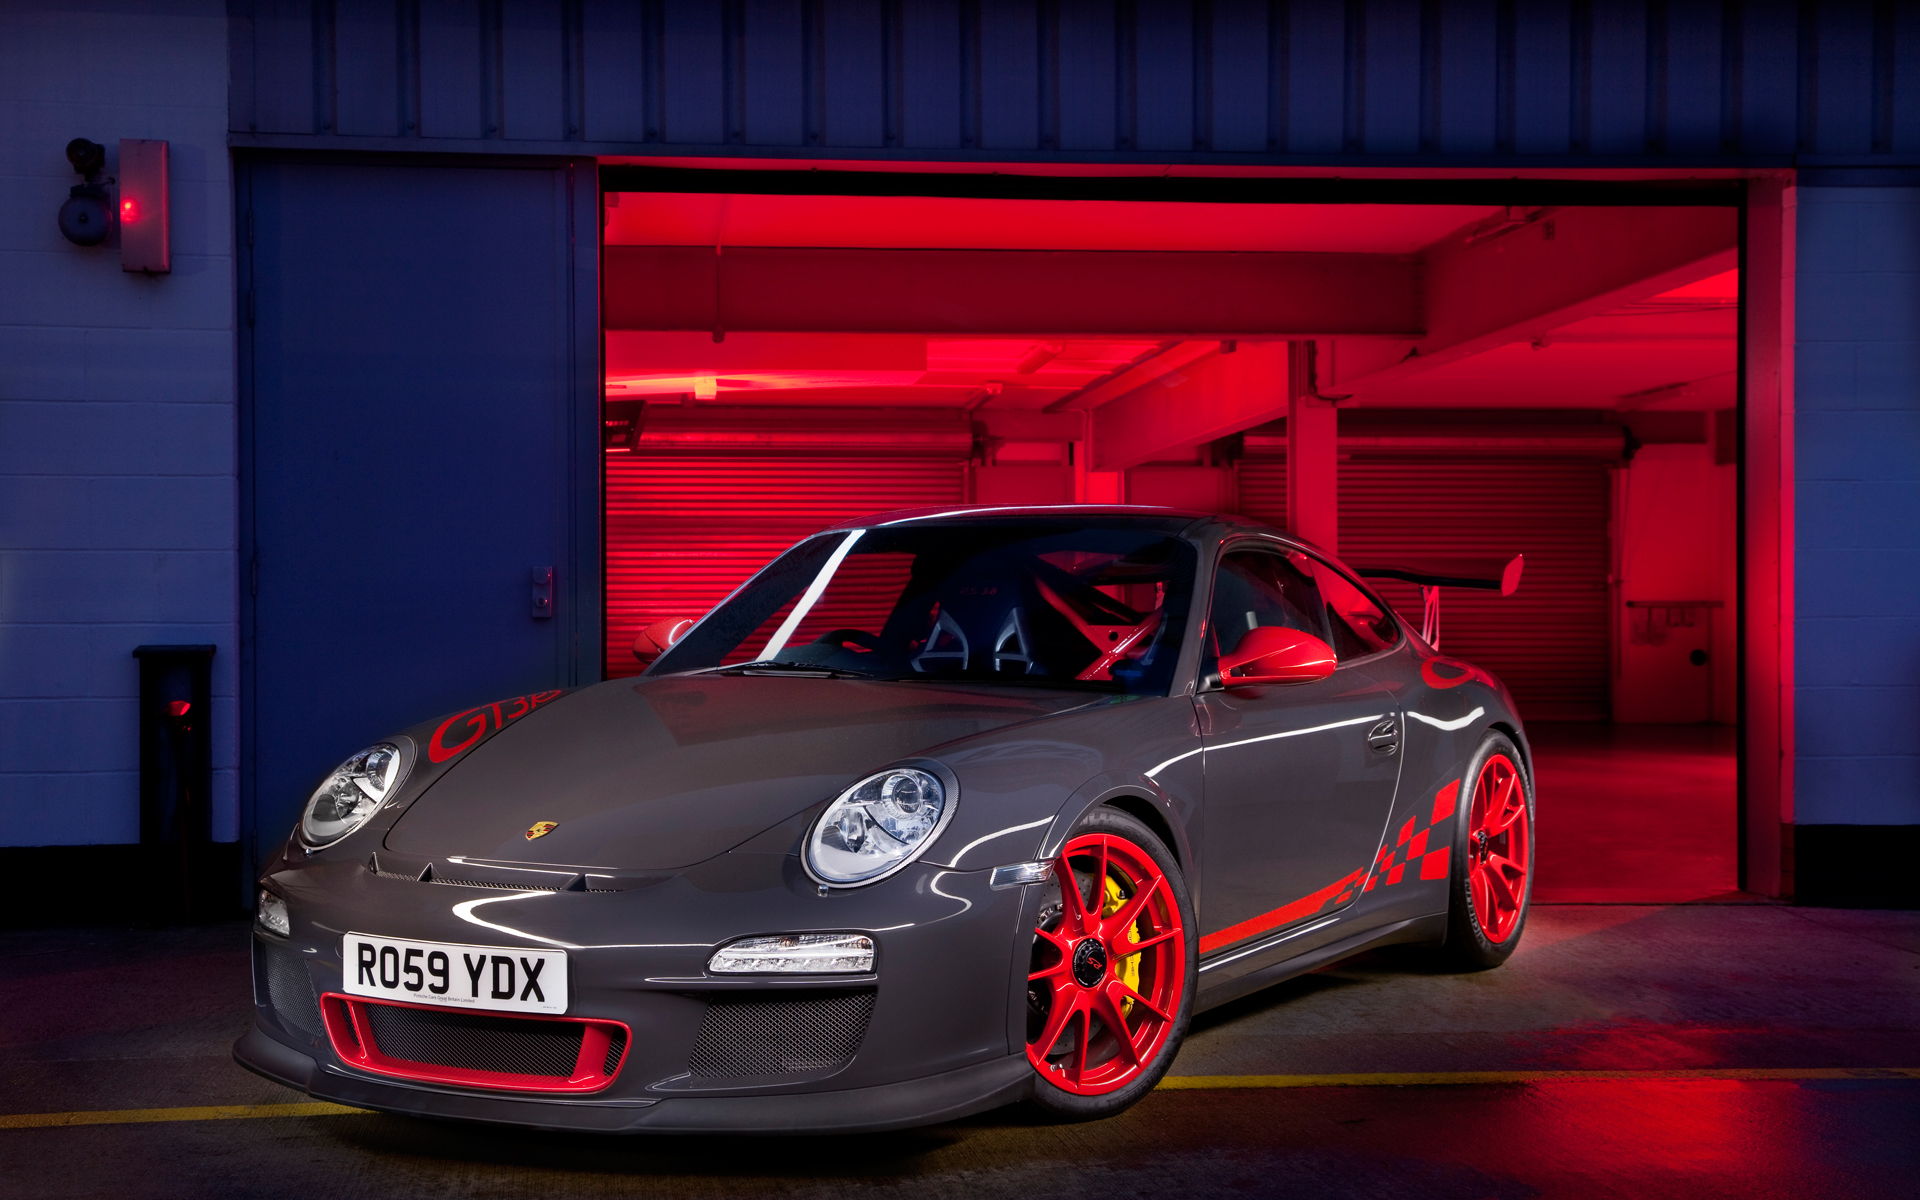 Porsche 911 gt3 HD Wallpapers | Best Wallpapers Fan|Download Free ...